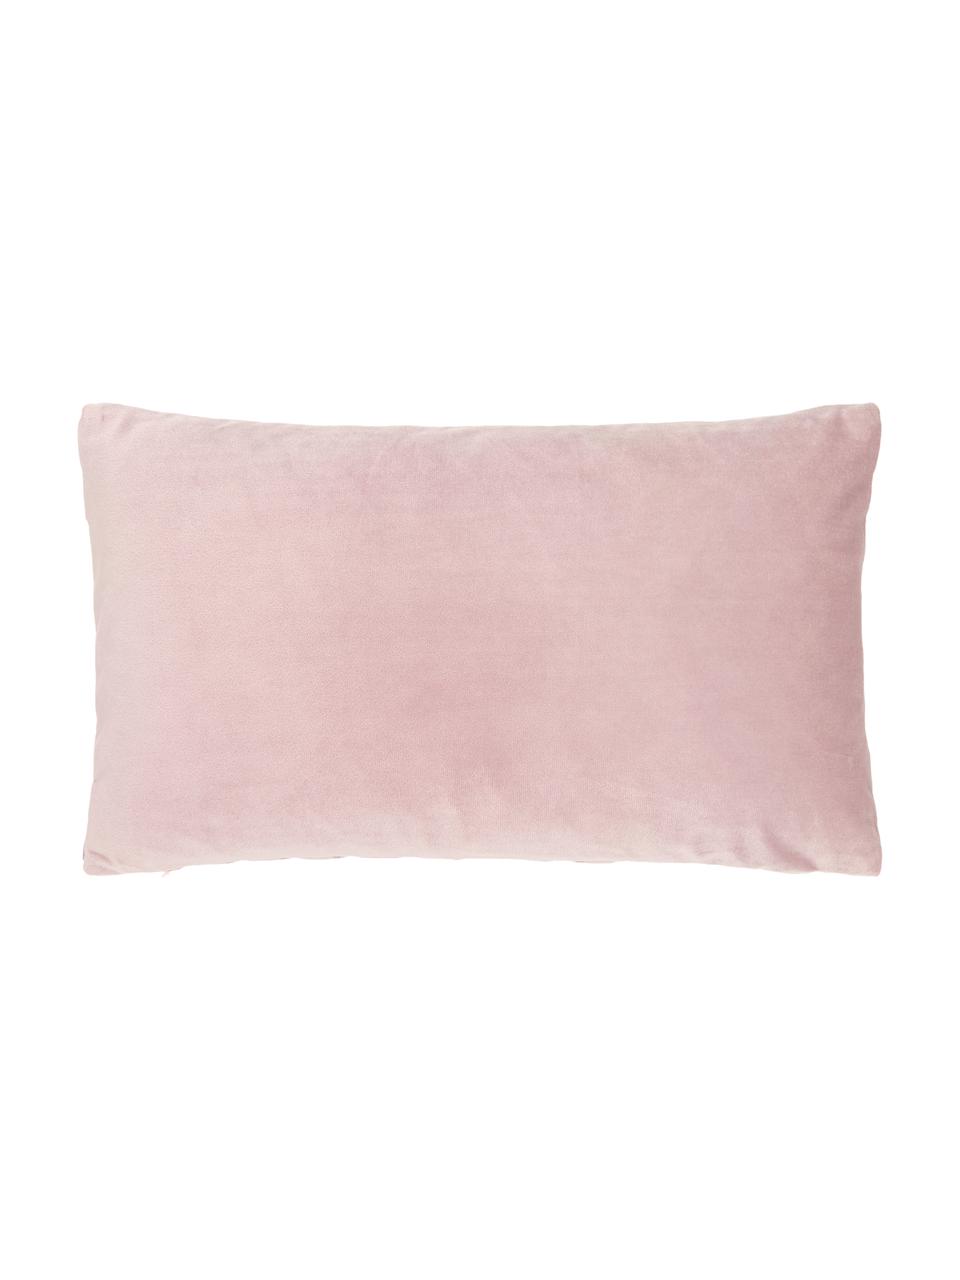 Poszewka na poduszkę z aksamitu Lucie, 100% aksamit (poliester), Blady różowy, S 30 x D 50 cm